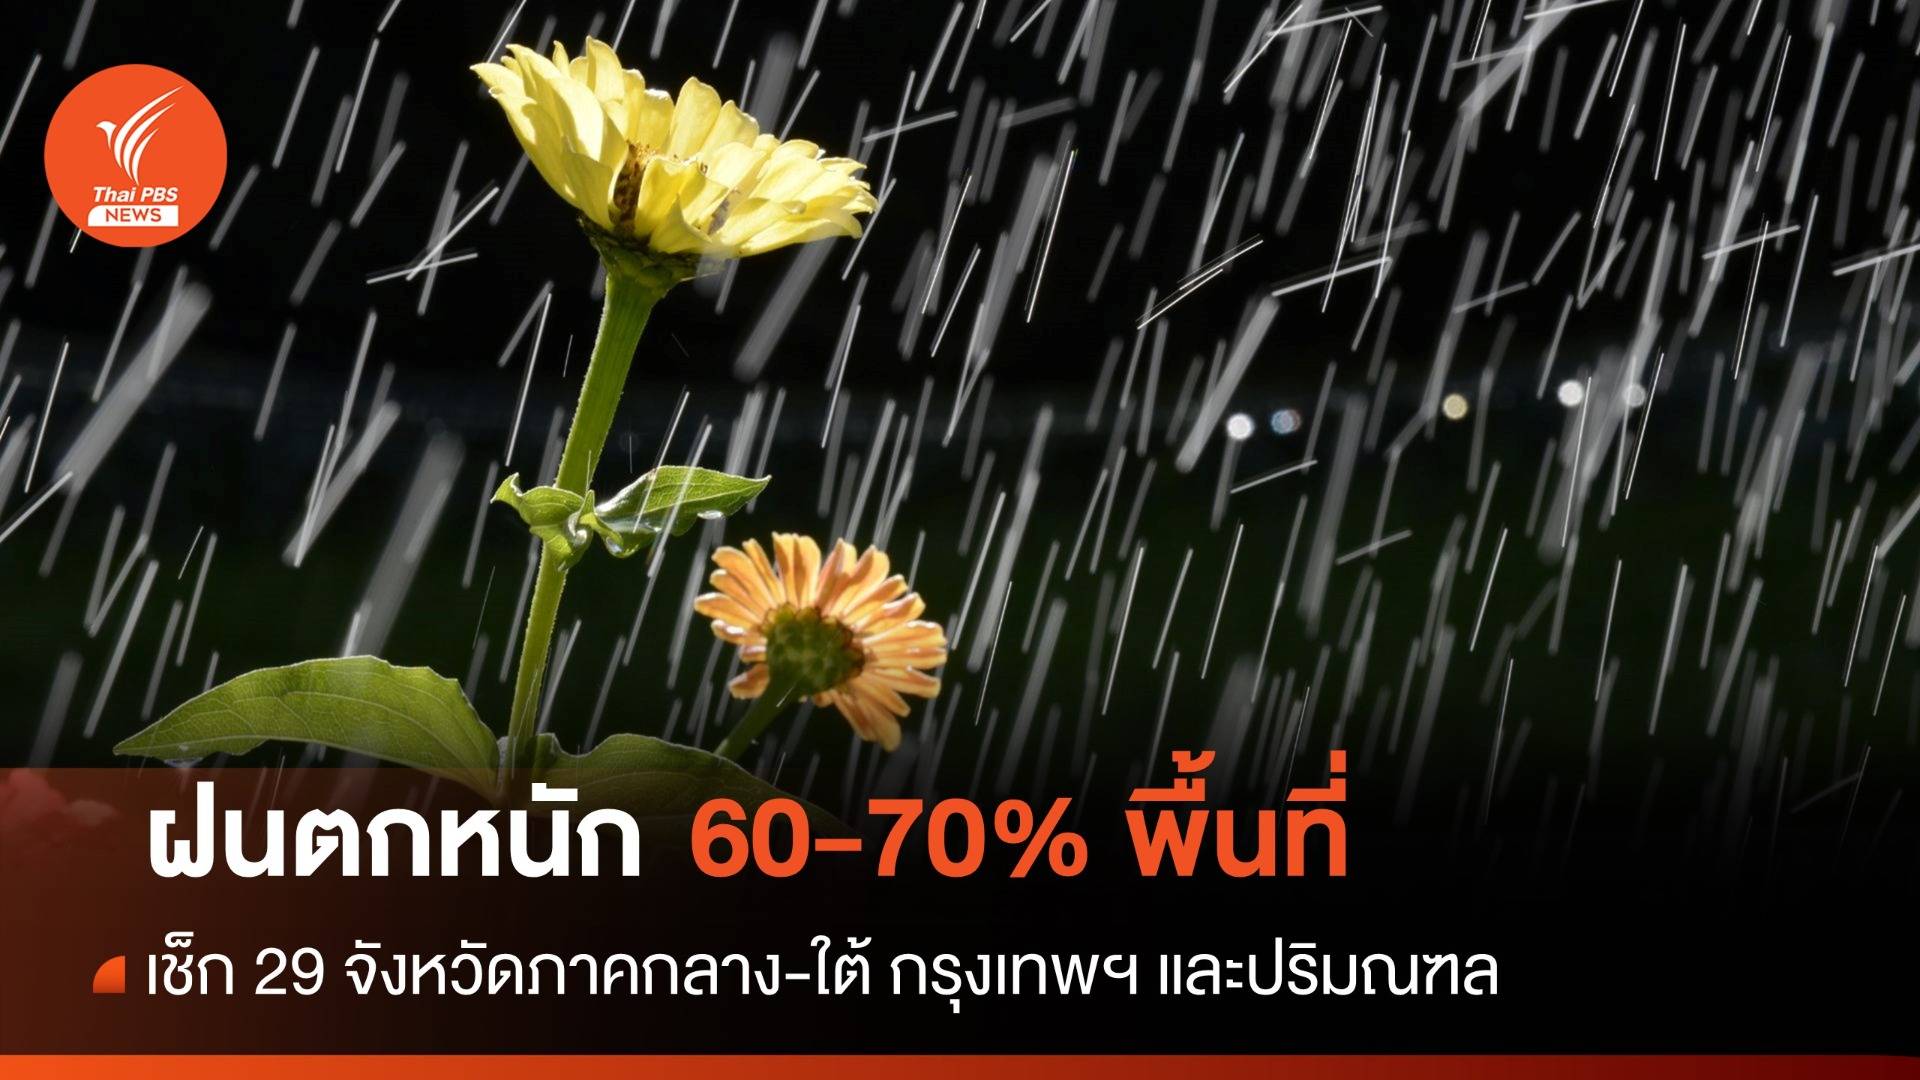 สภาพอากาศวันนี้ เช็ก 29 จังหวัดรับมือฝนตกหนัก 60-70% พื้นที่